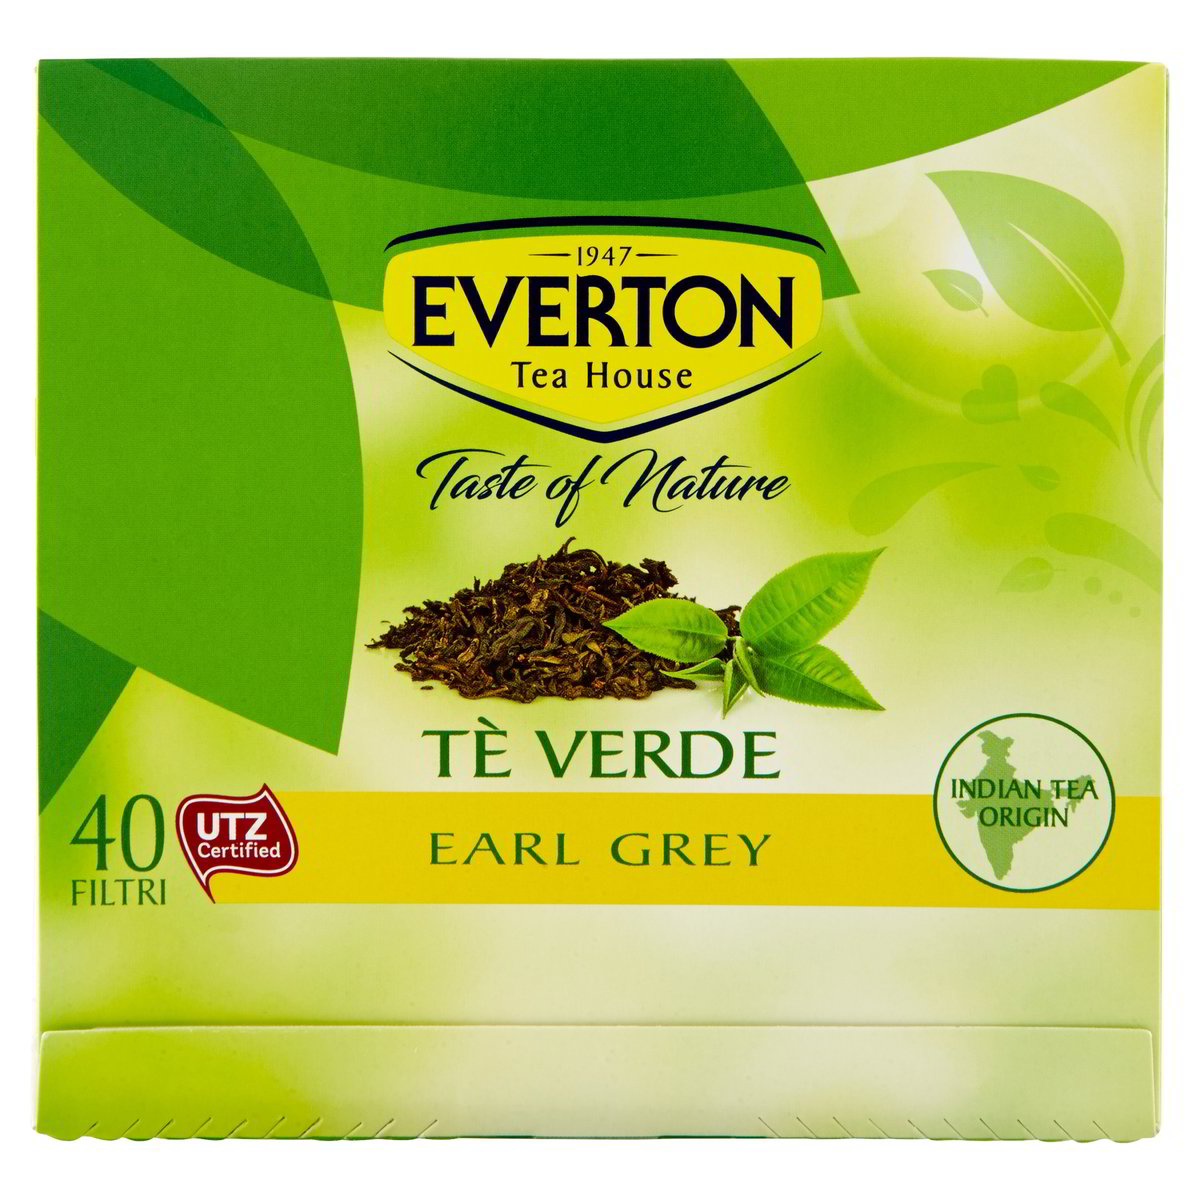 Everton Tè Verde Earl Grey